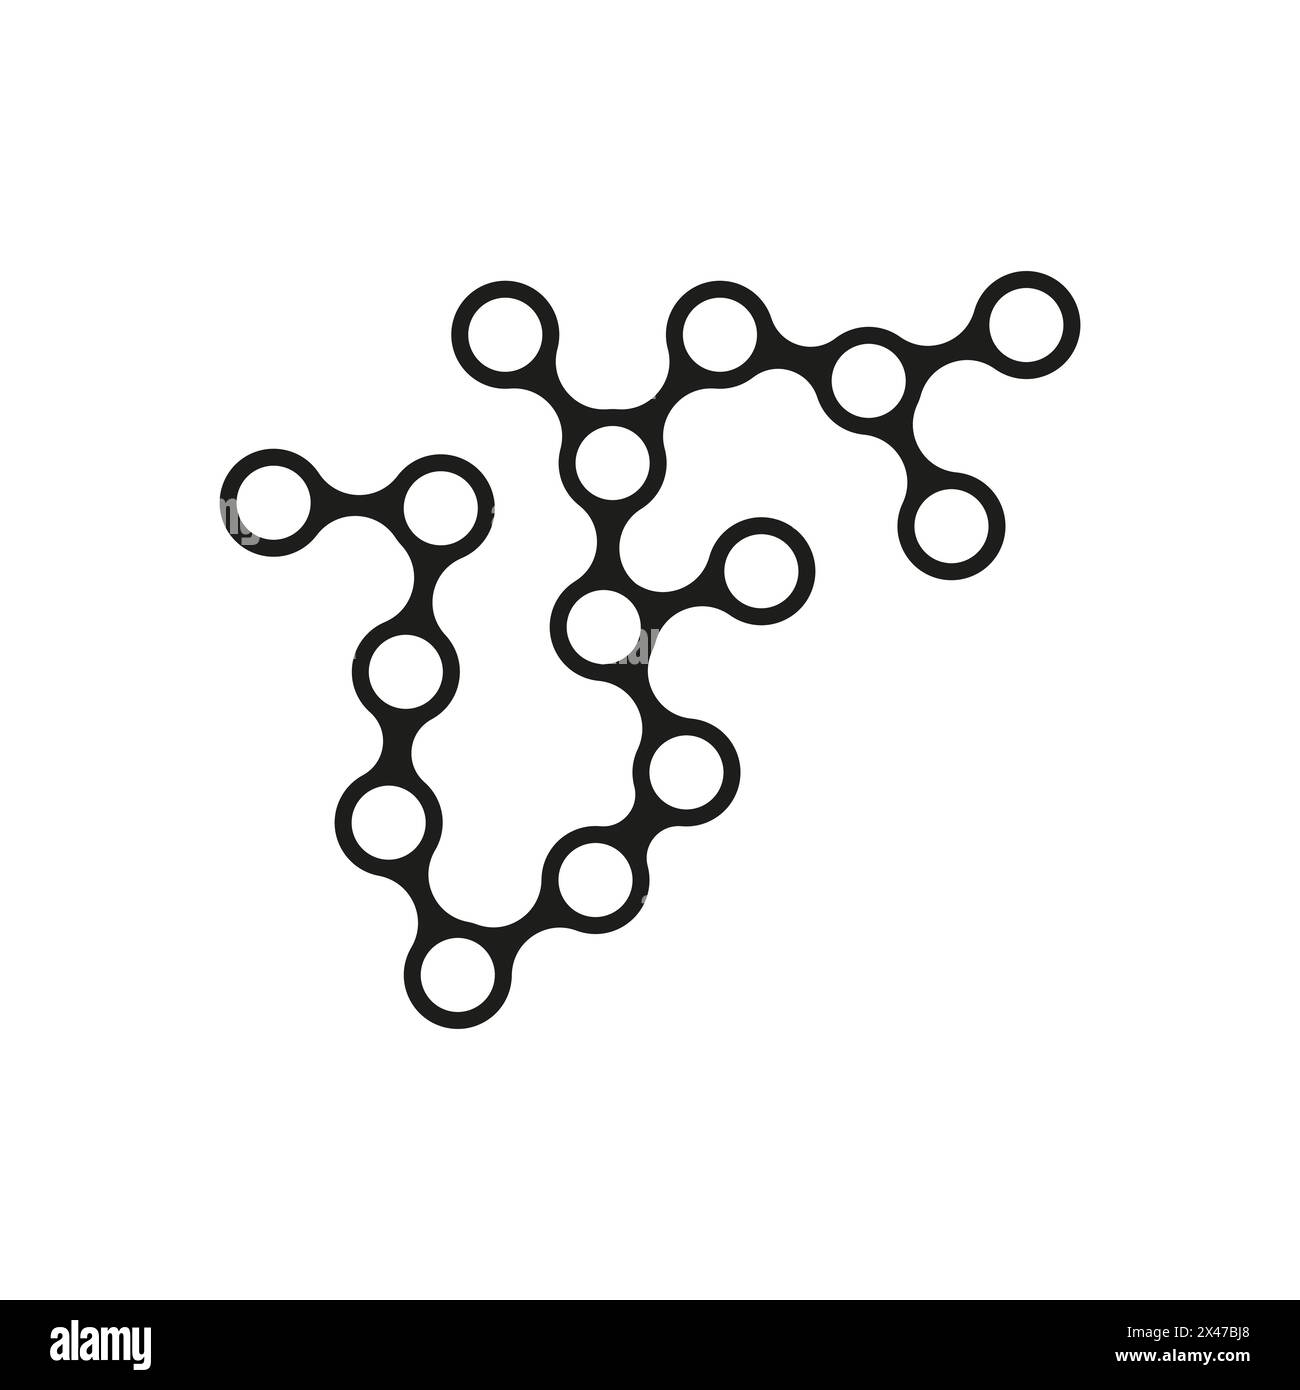 Abbildung der Molekülbindungen. Abstrakter Vektor verbundener Kreise. Symbol für wissenschaftliche Struktur. Stock Vektor